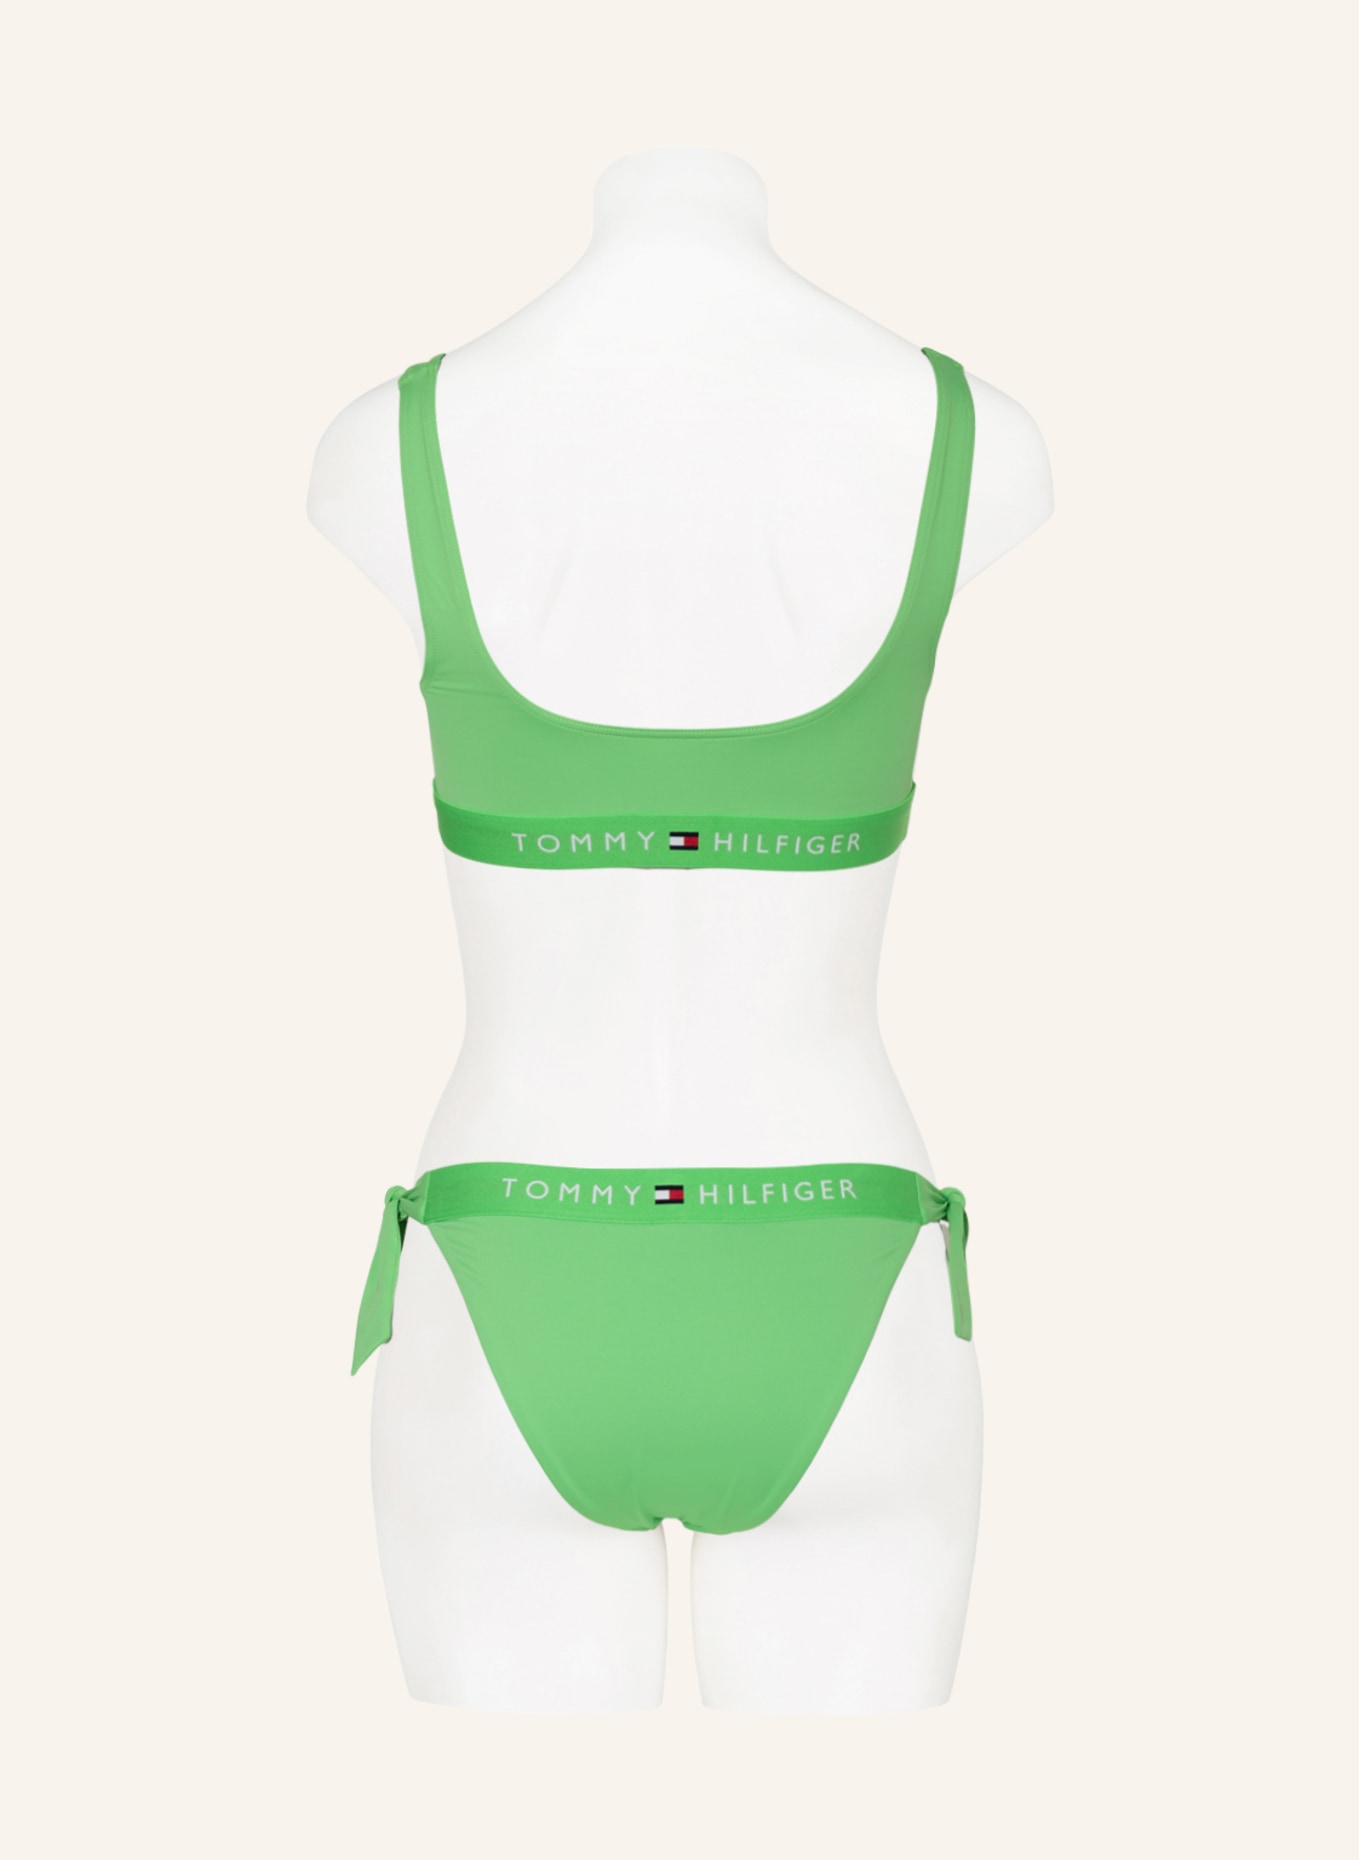 TOMMY HILFIGER Bralette bikini top, Color: LIGHT GREEN (Image 3)